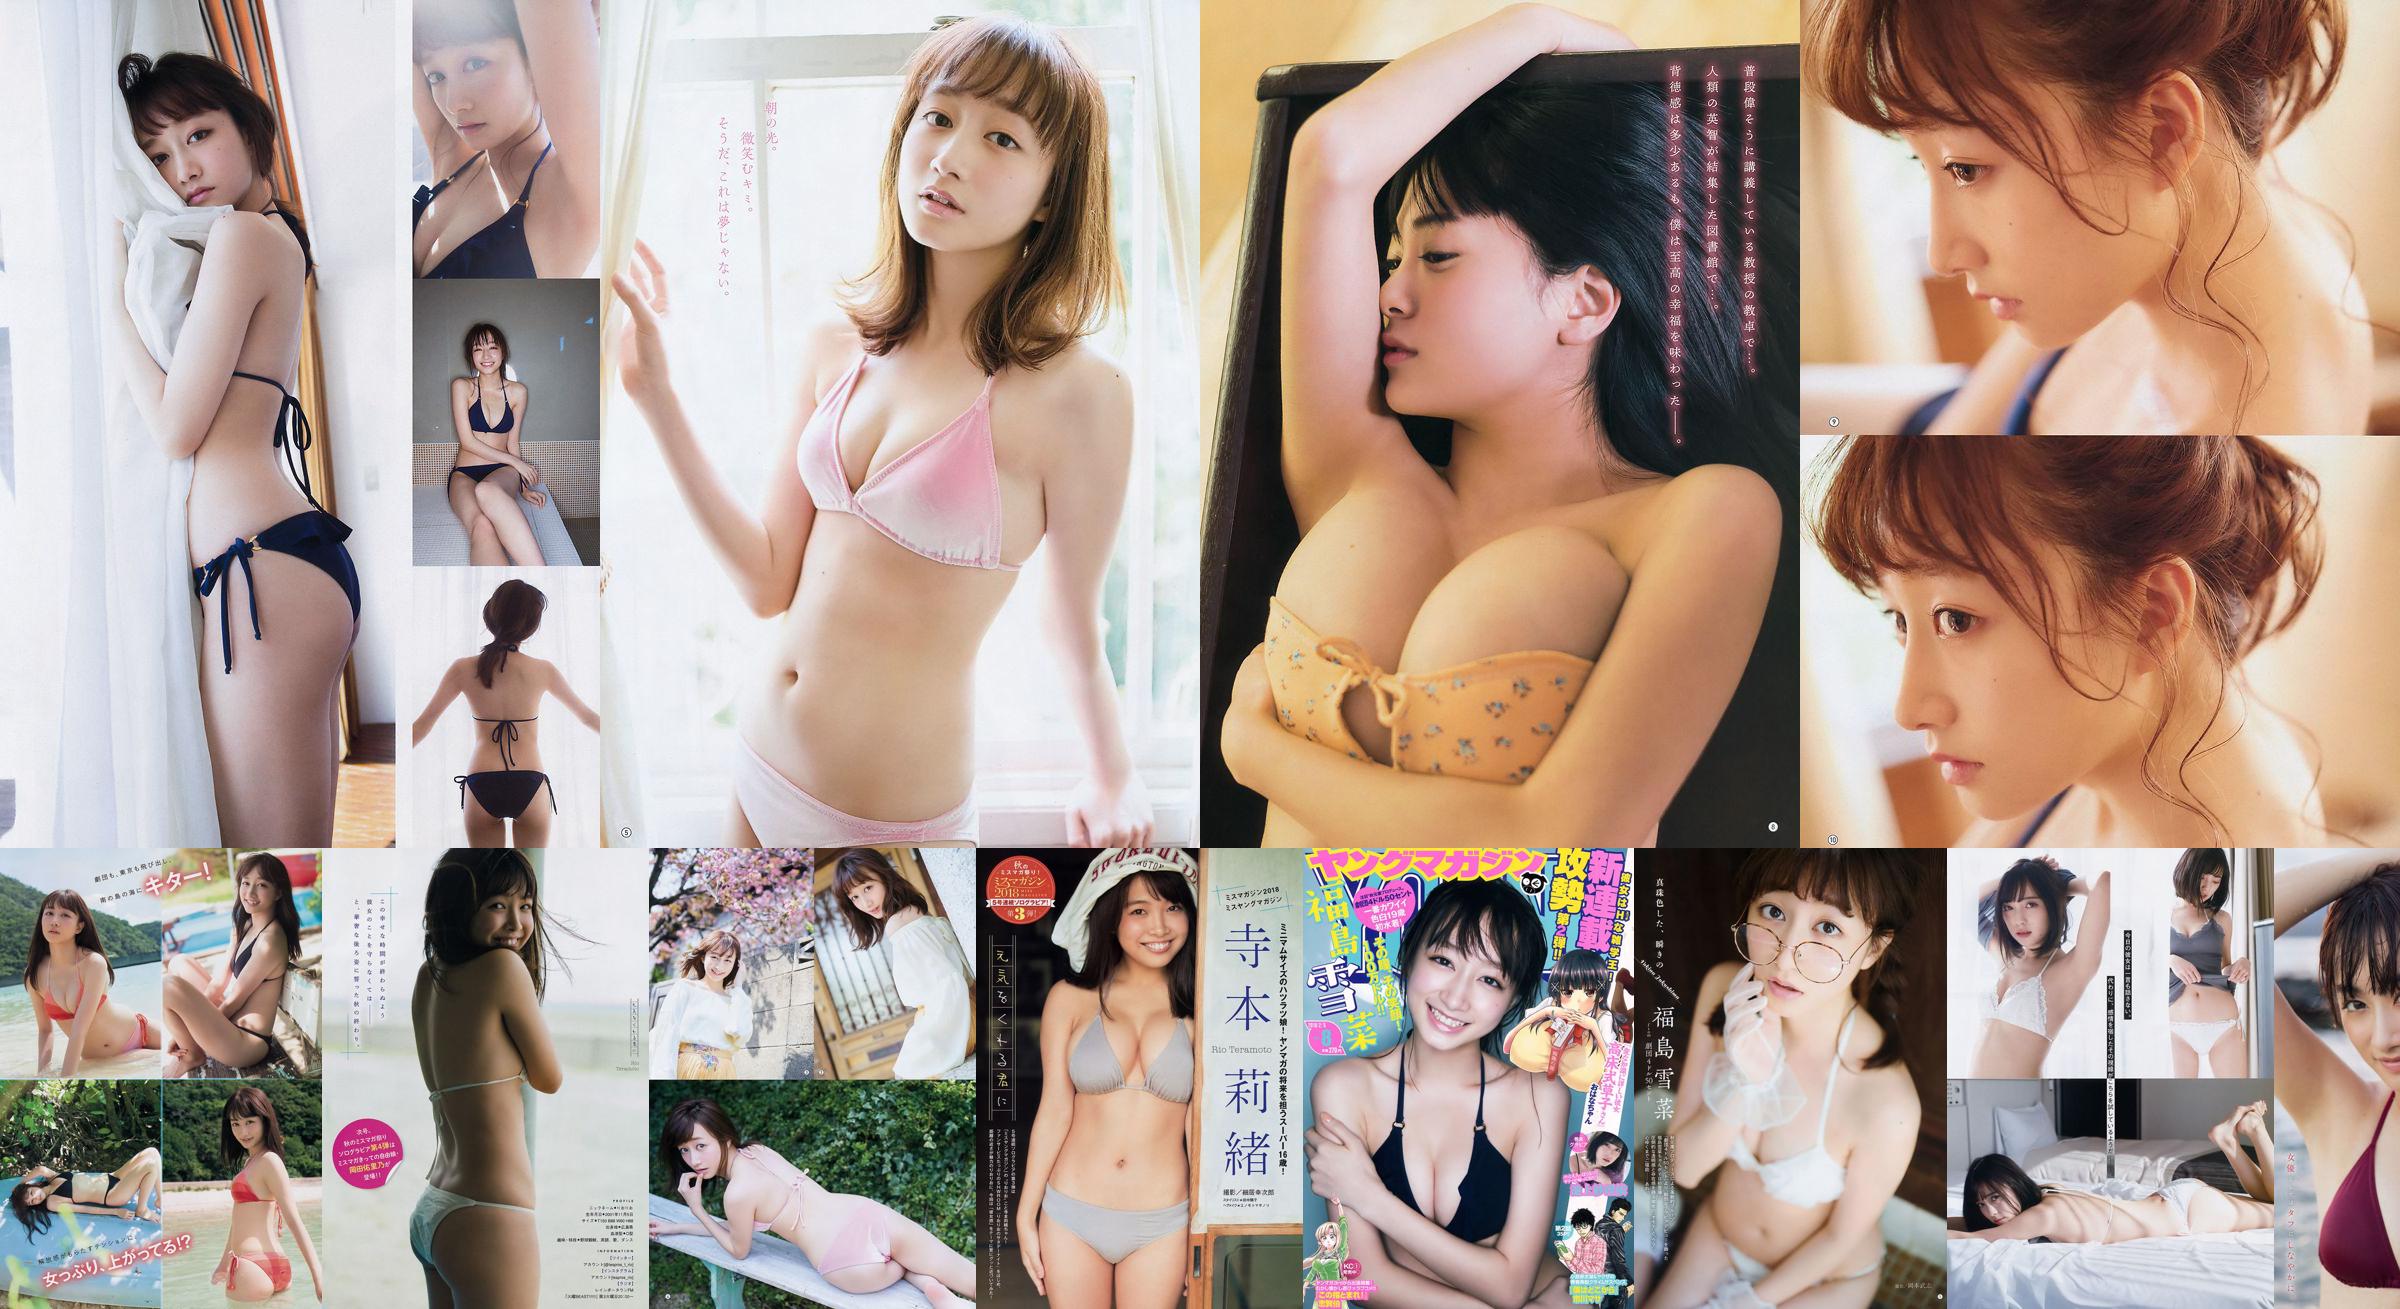 [Young Magazine] Fukushima Yukana and Saree Ikegami 2018 No.08 Photo Magazine No.299b39 Page 1